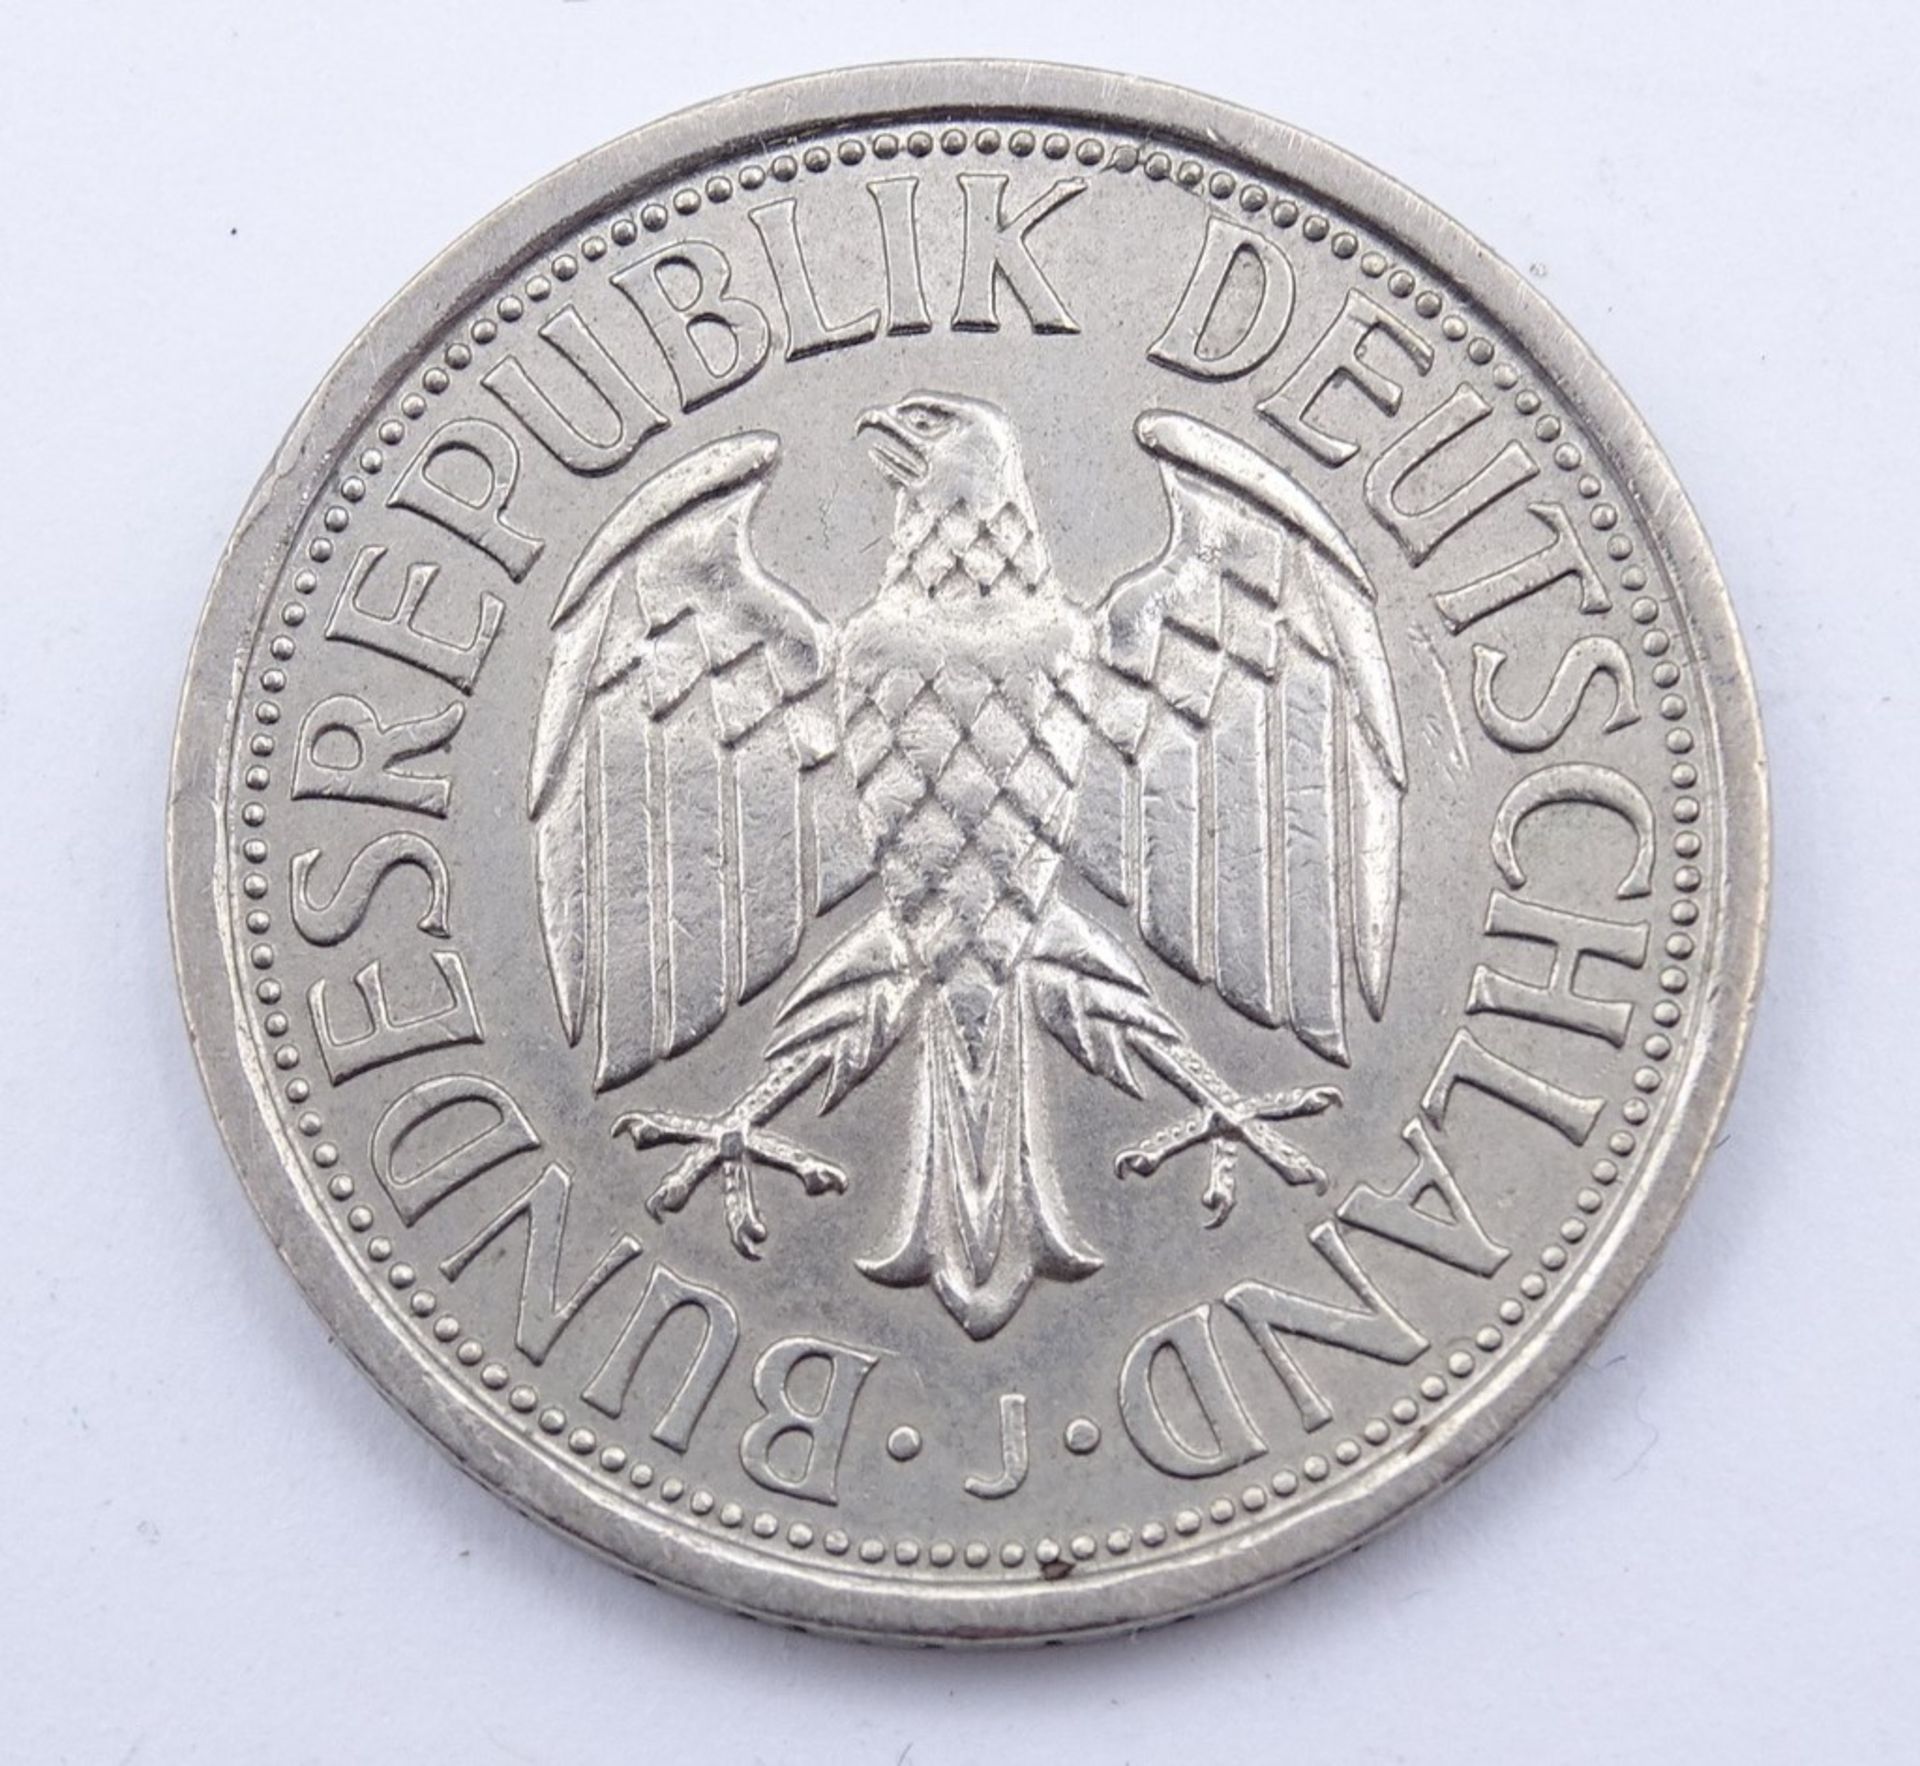 2 Deutsche Mark 1951 J - Image 2 of 2